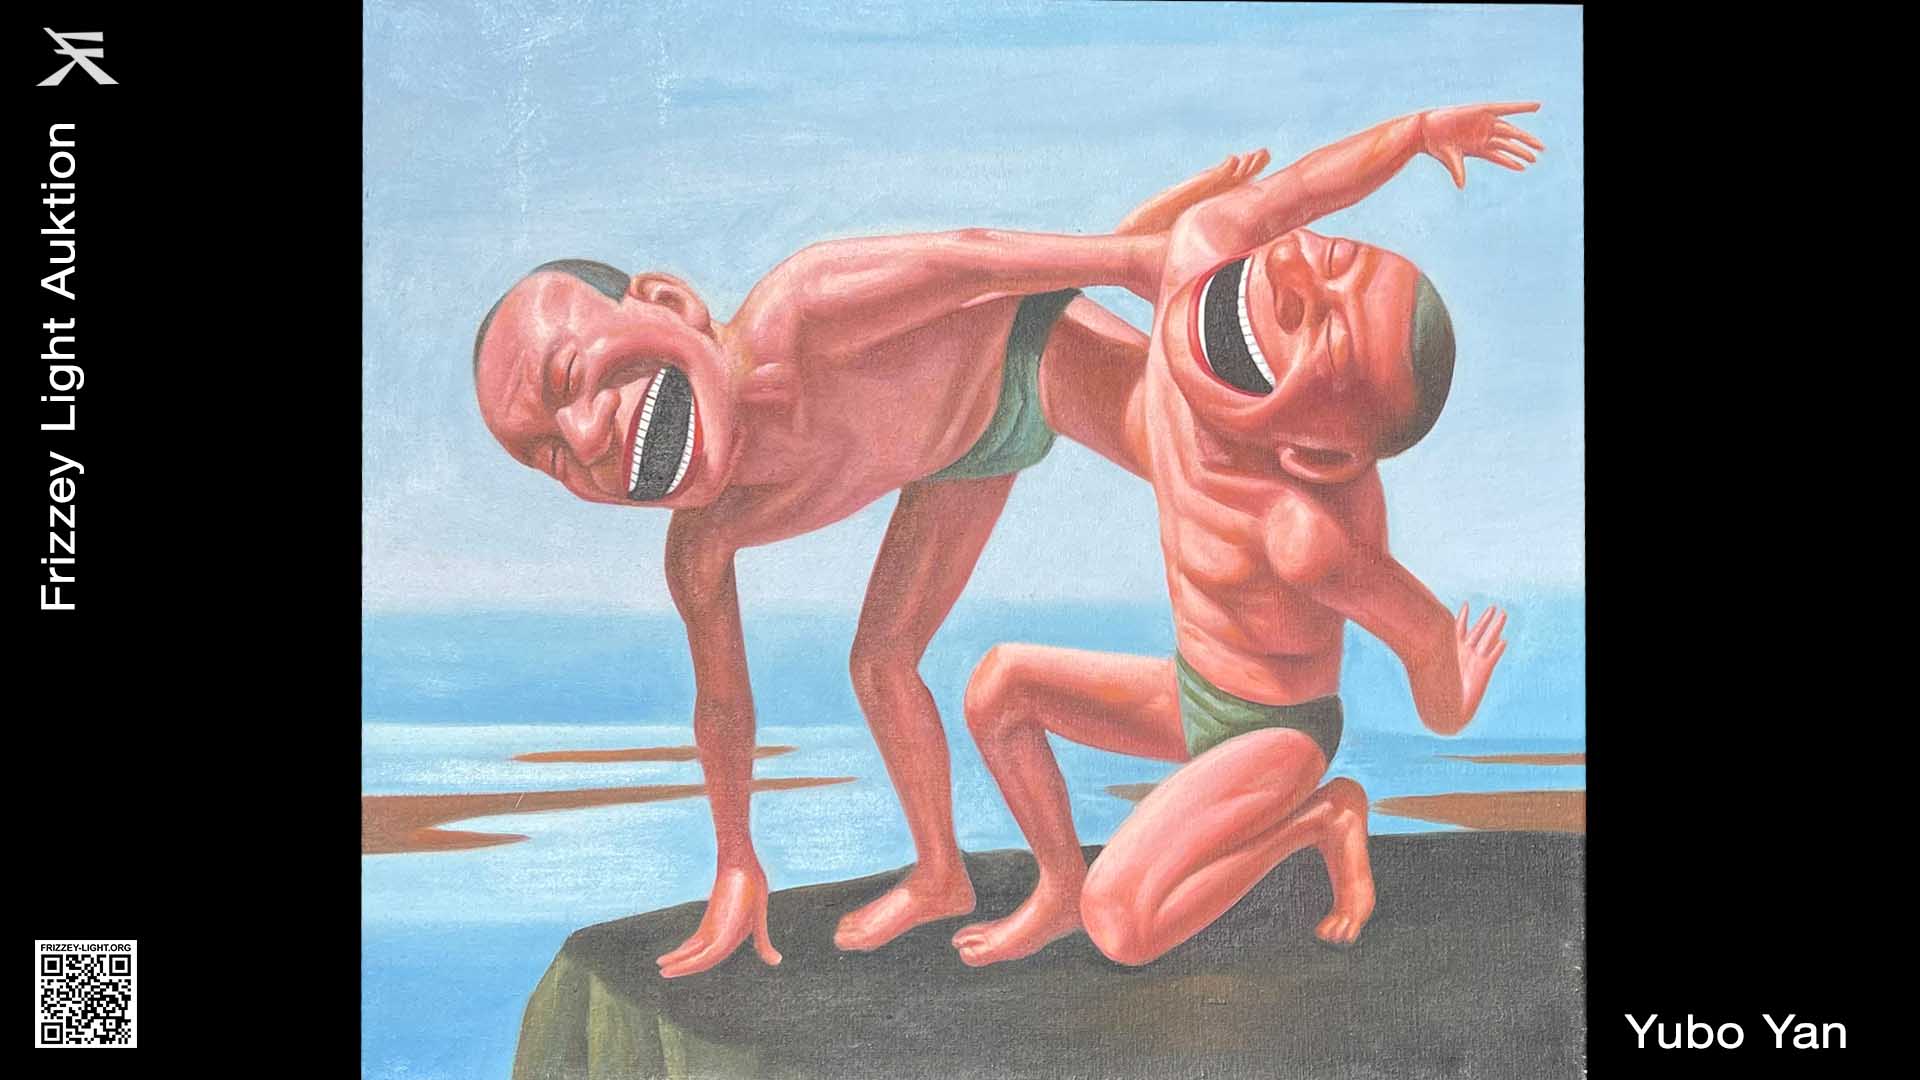 „Yoga“ by Yubo Yan